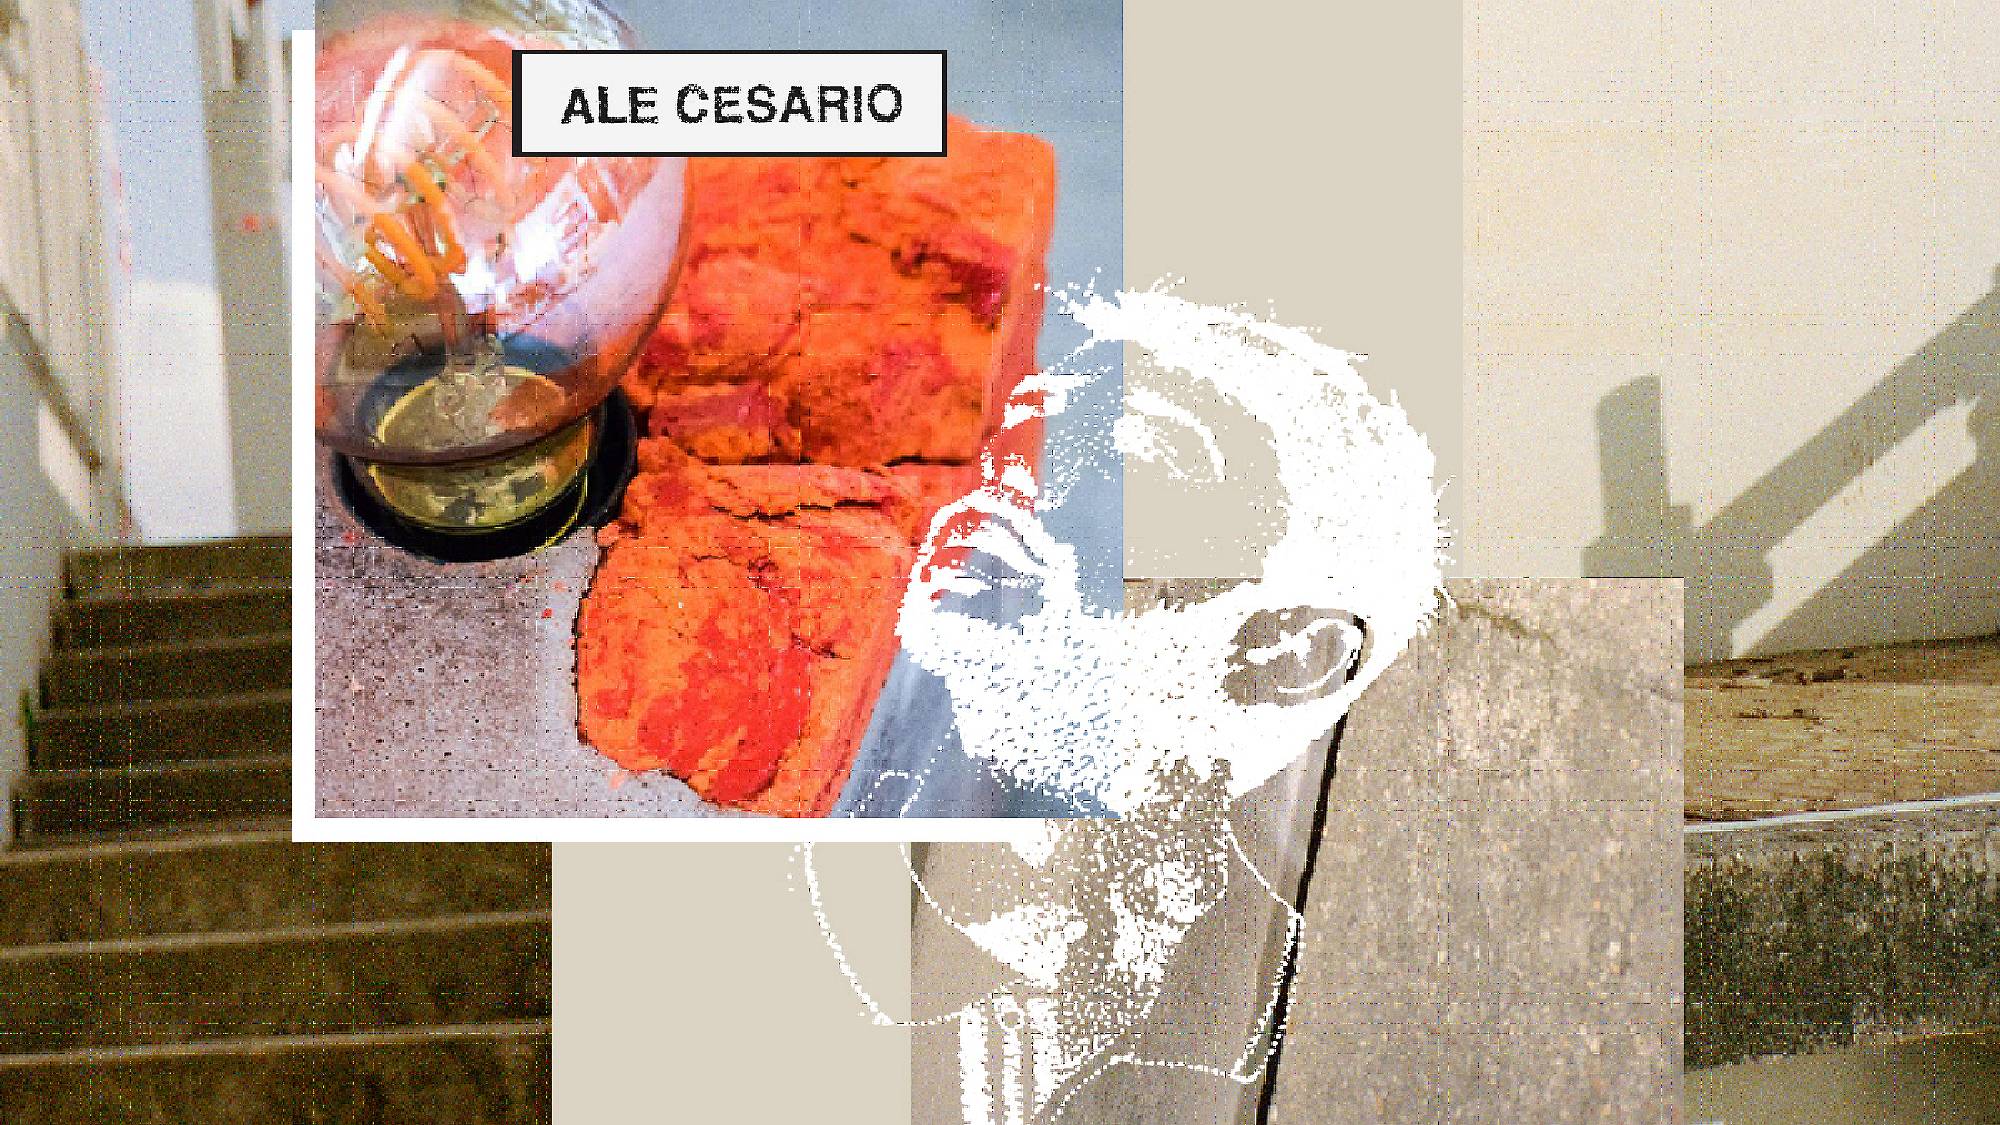 Meet Ale Cesario